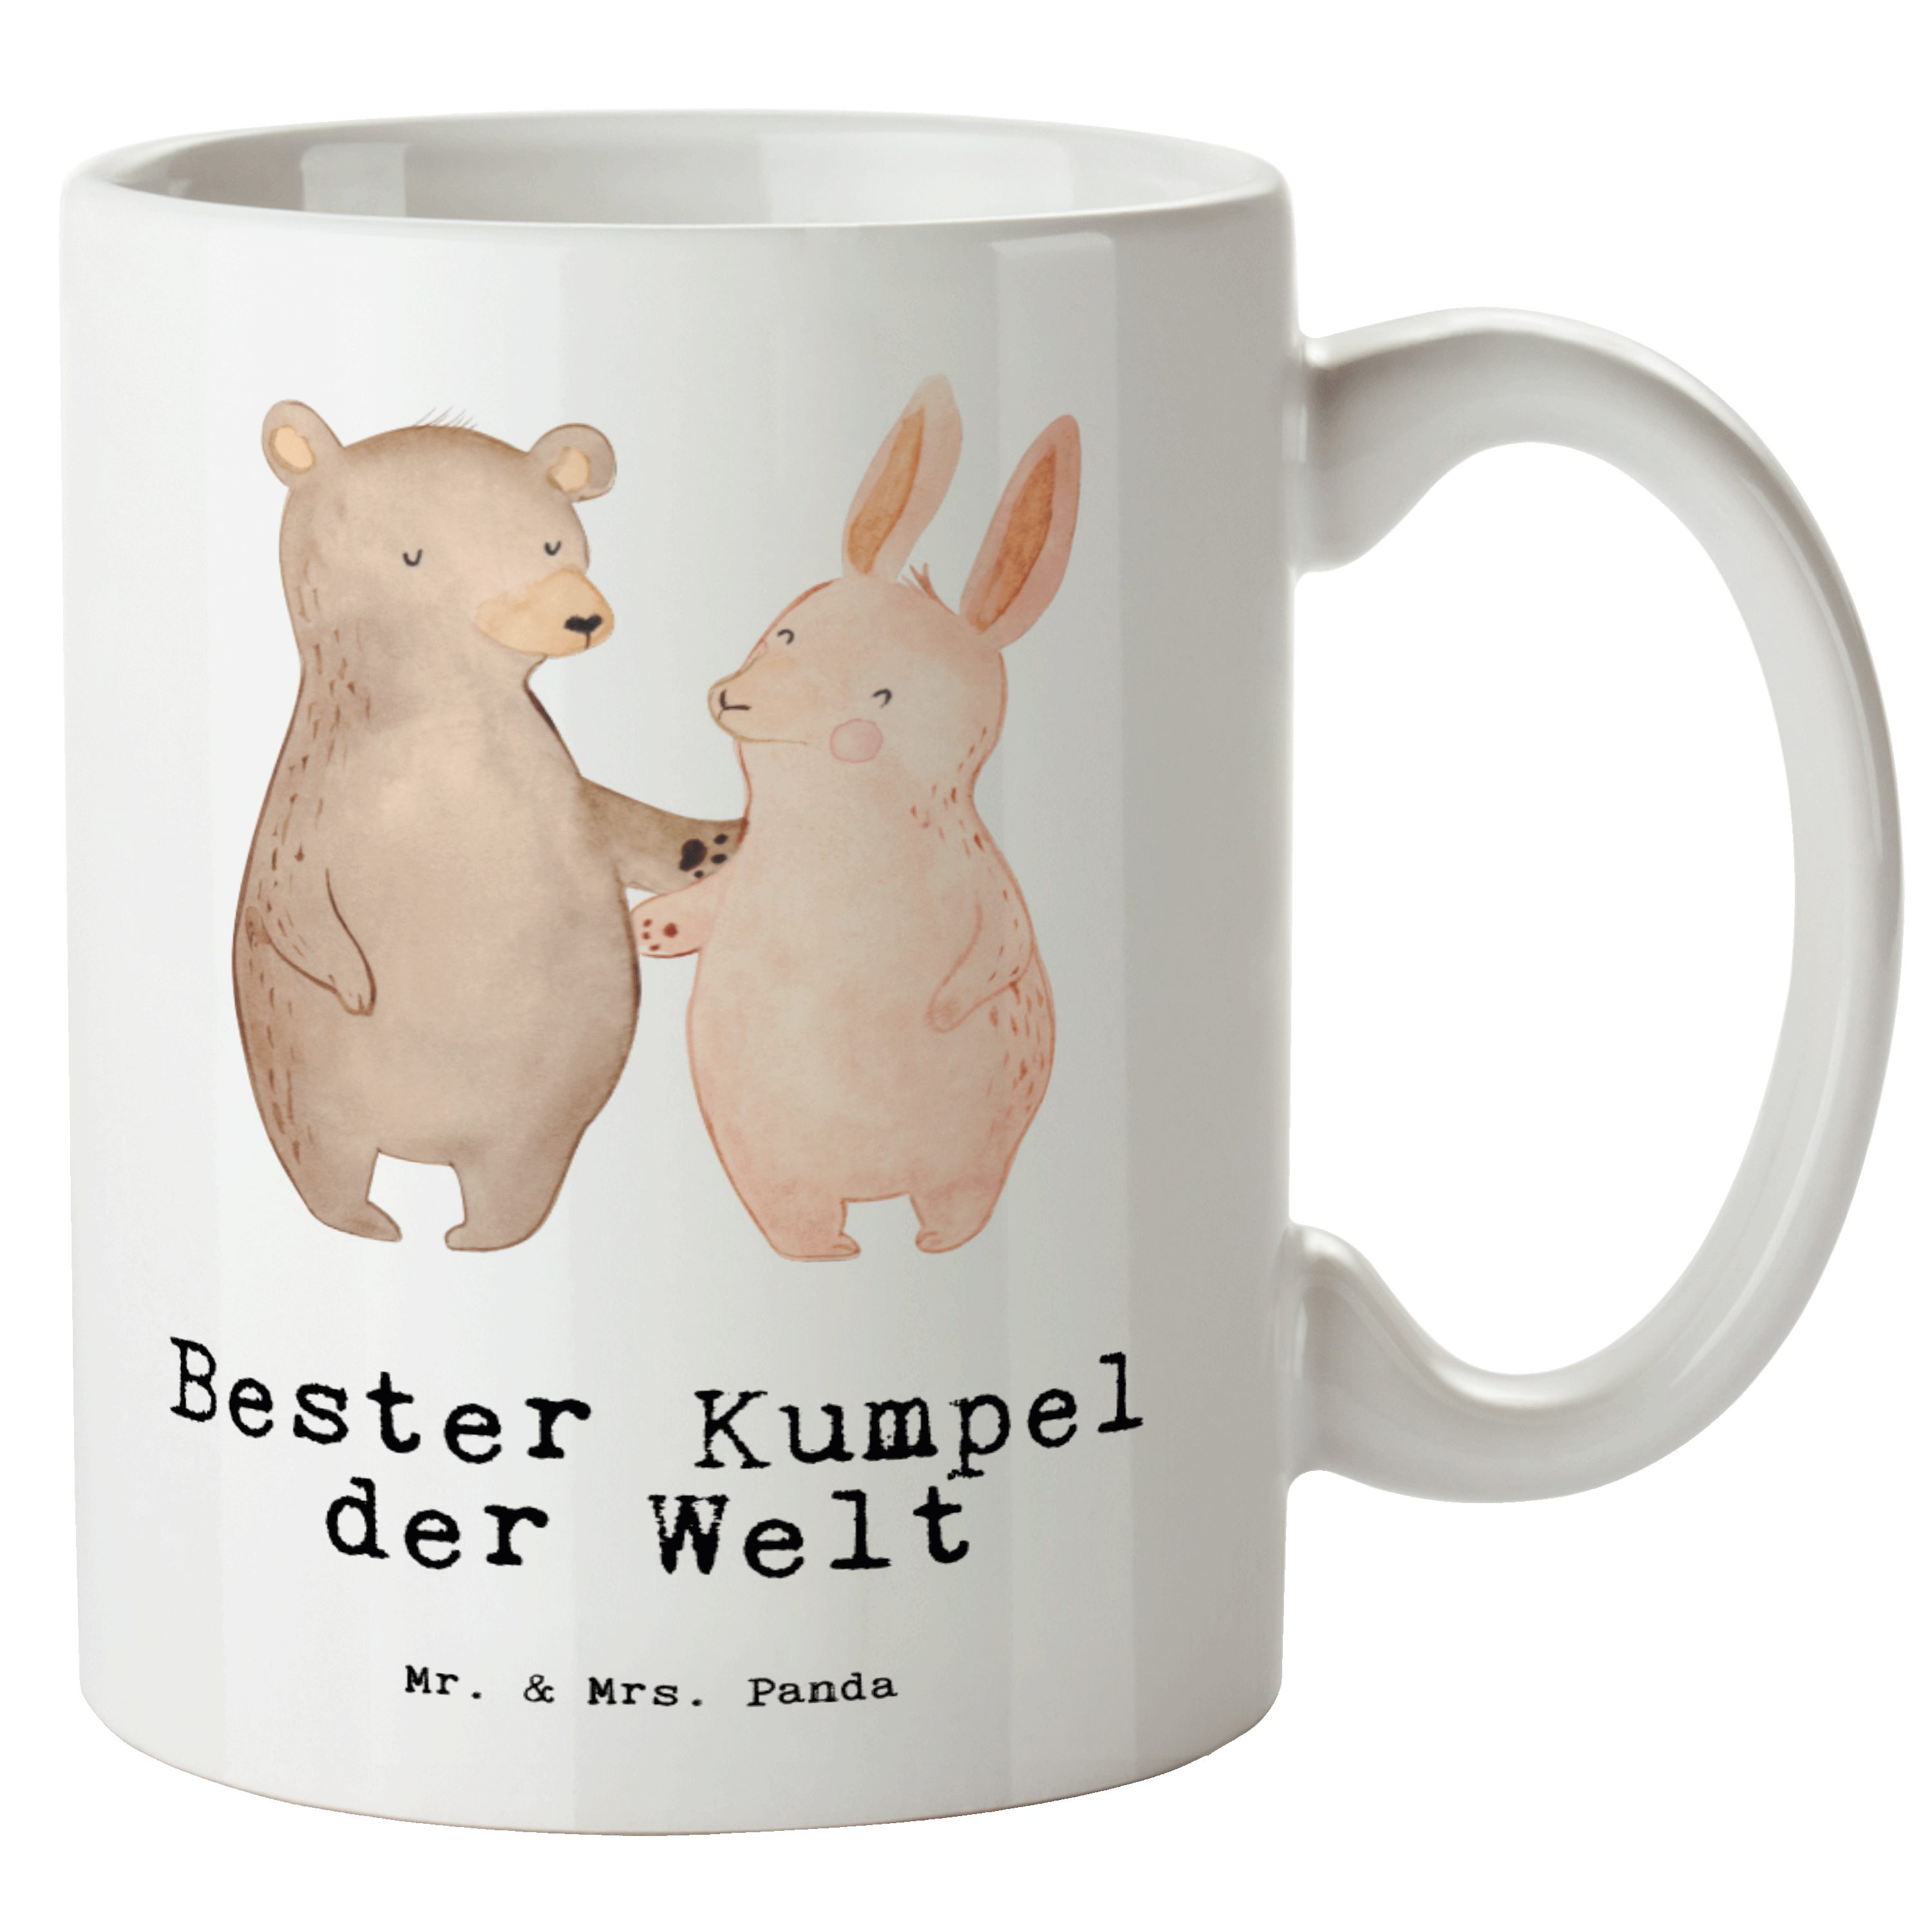 Mr. & Mrs. Panda Tasse Hase Bester Kumpel der Welt - Weiß - Geschenk, Jumbo Tasse, XL Becher, XL Tasse Keramik